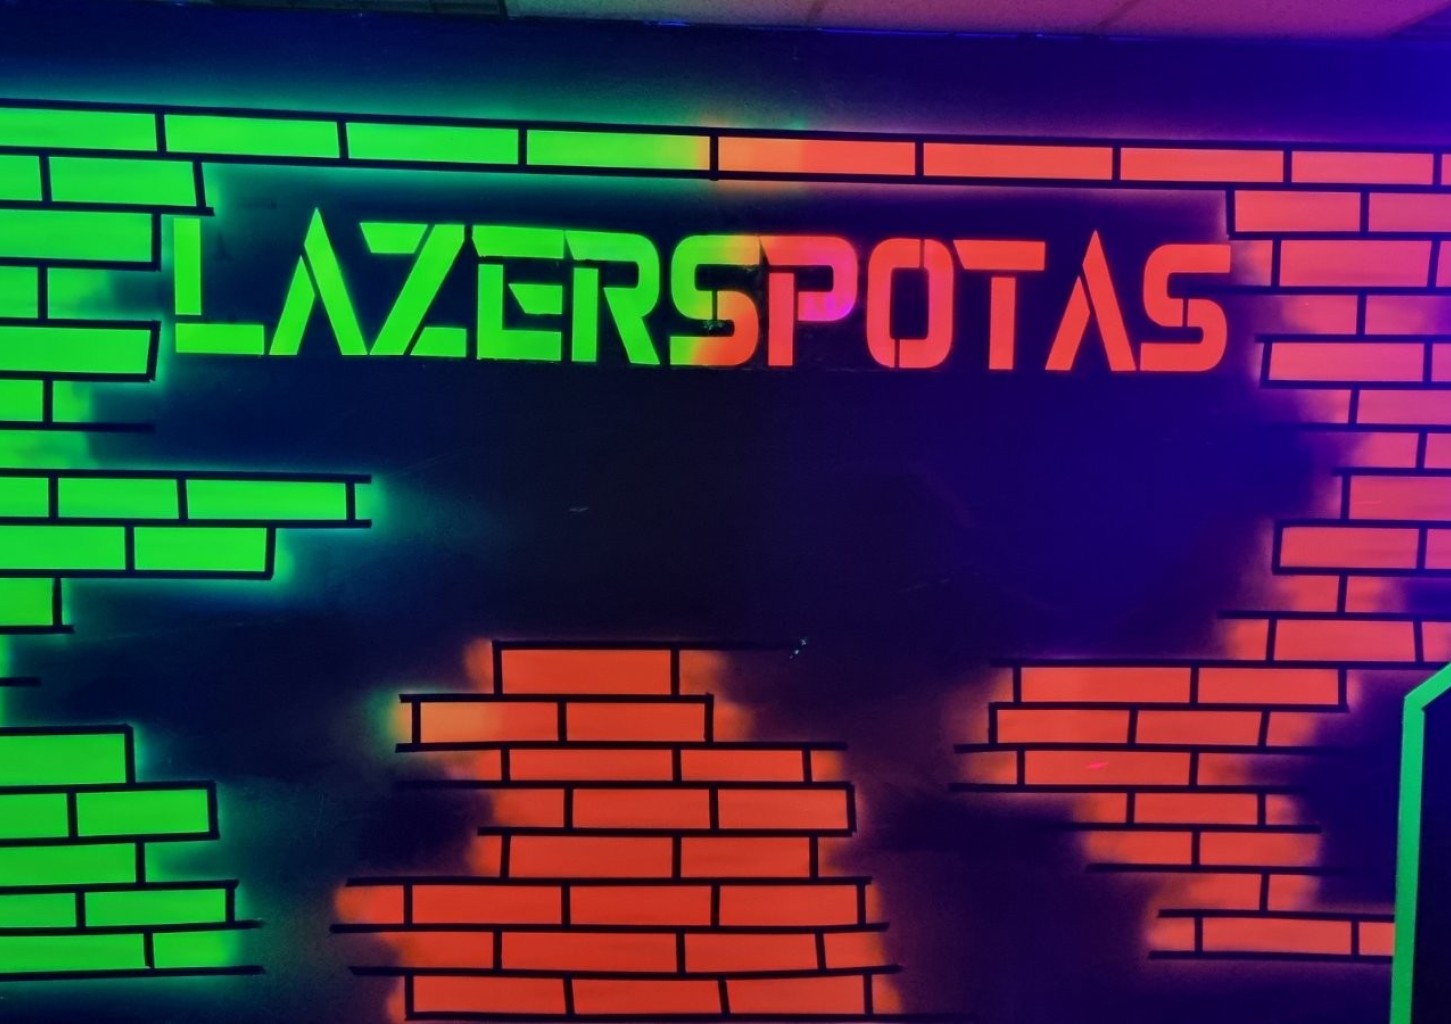 Žaidimas lazeriniais ginklais arenoje „Lazerspotas“ (dienos metu)